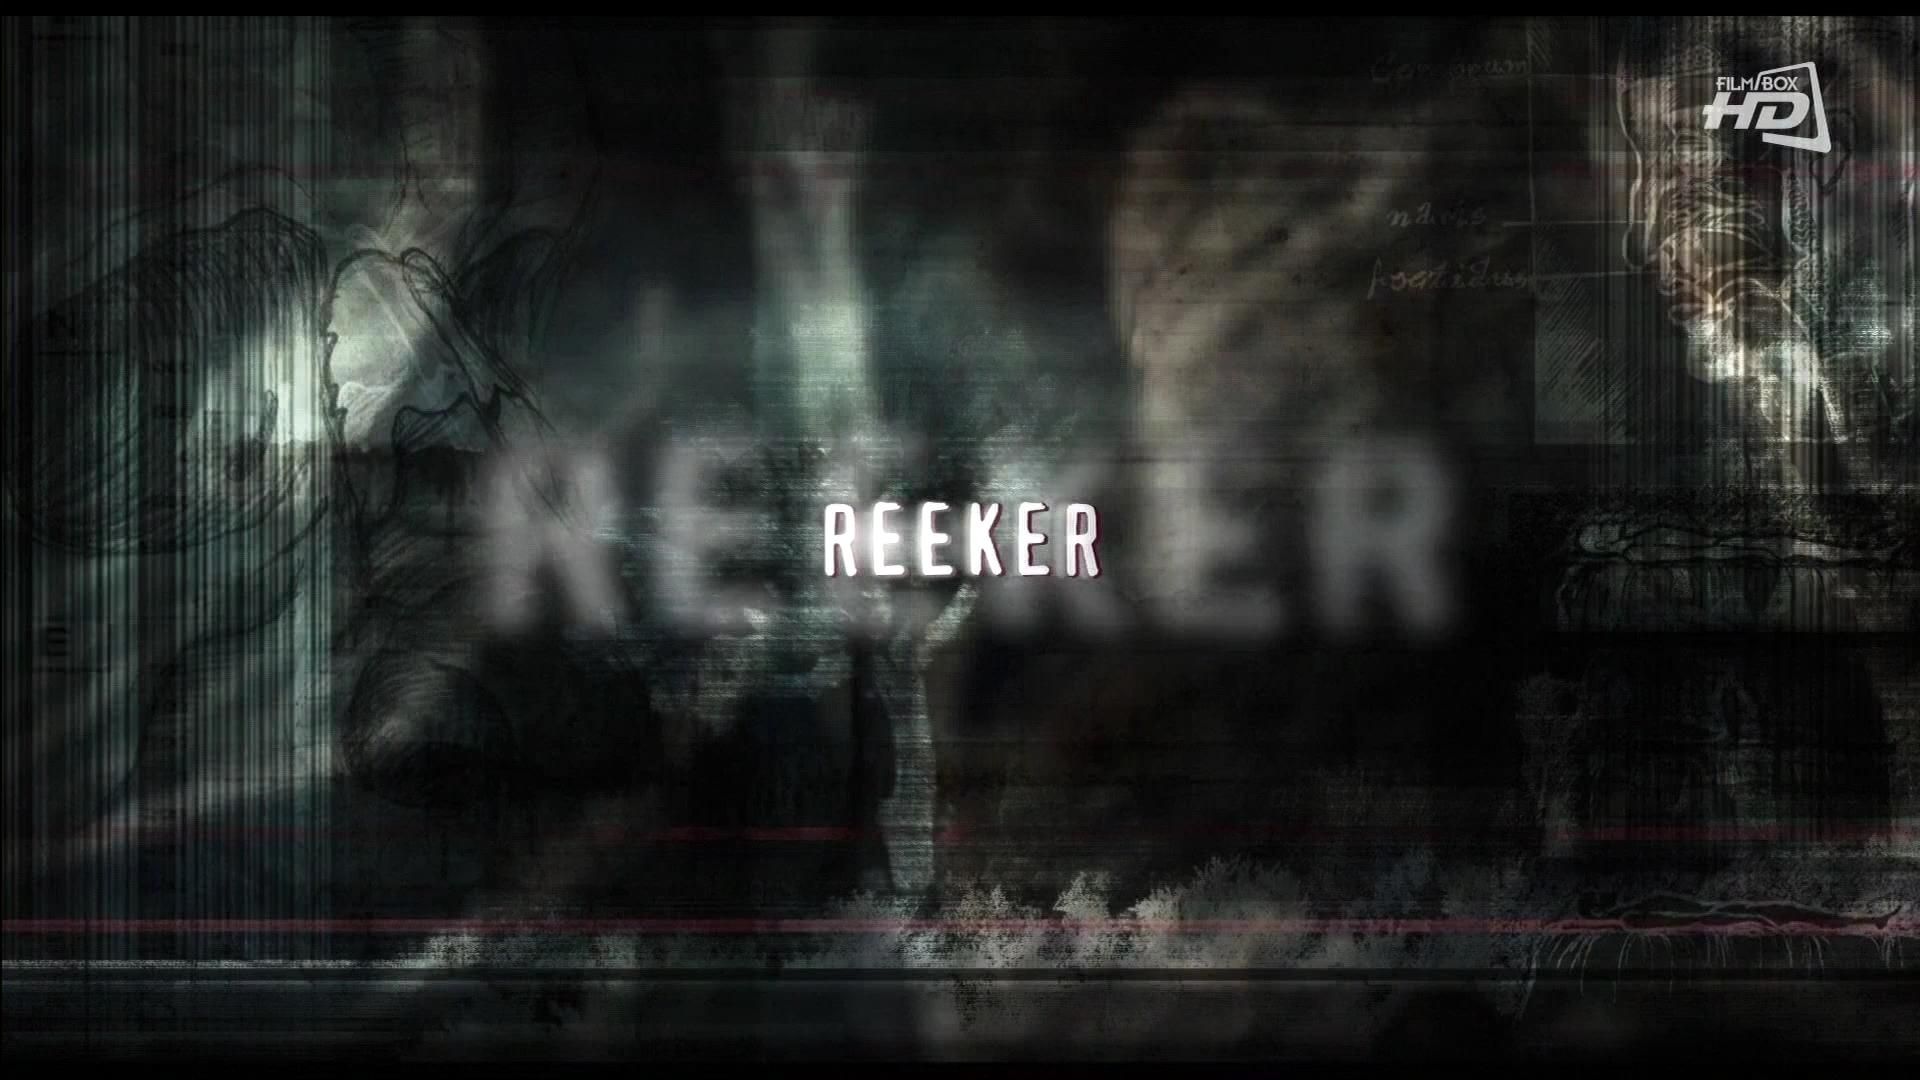 2005-Reeker-001.jpg